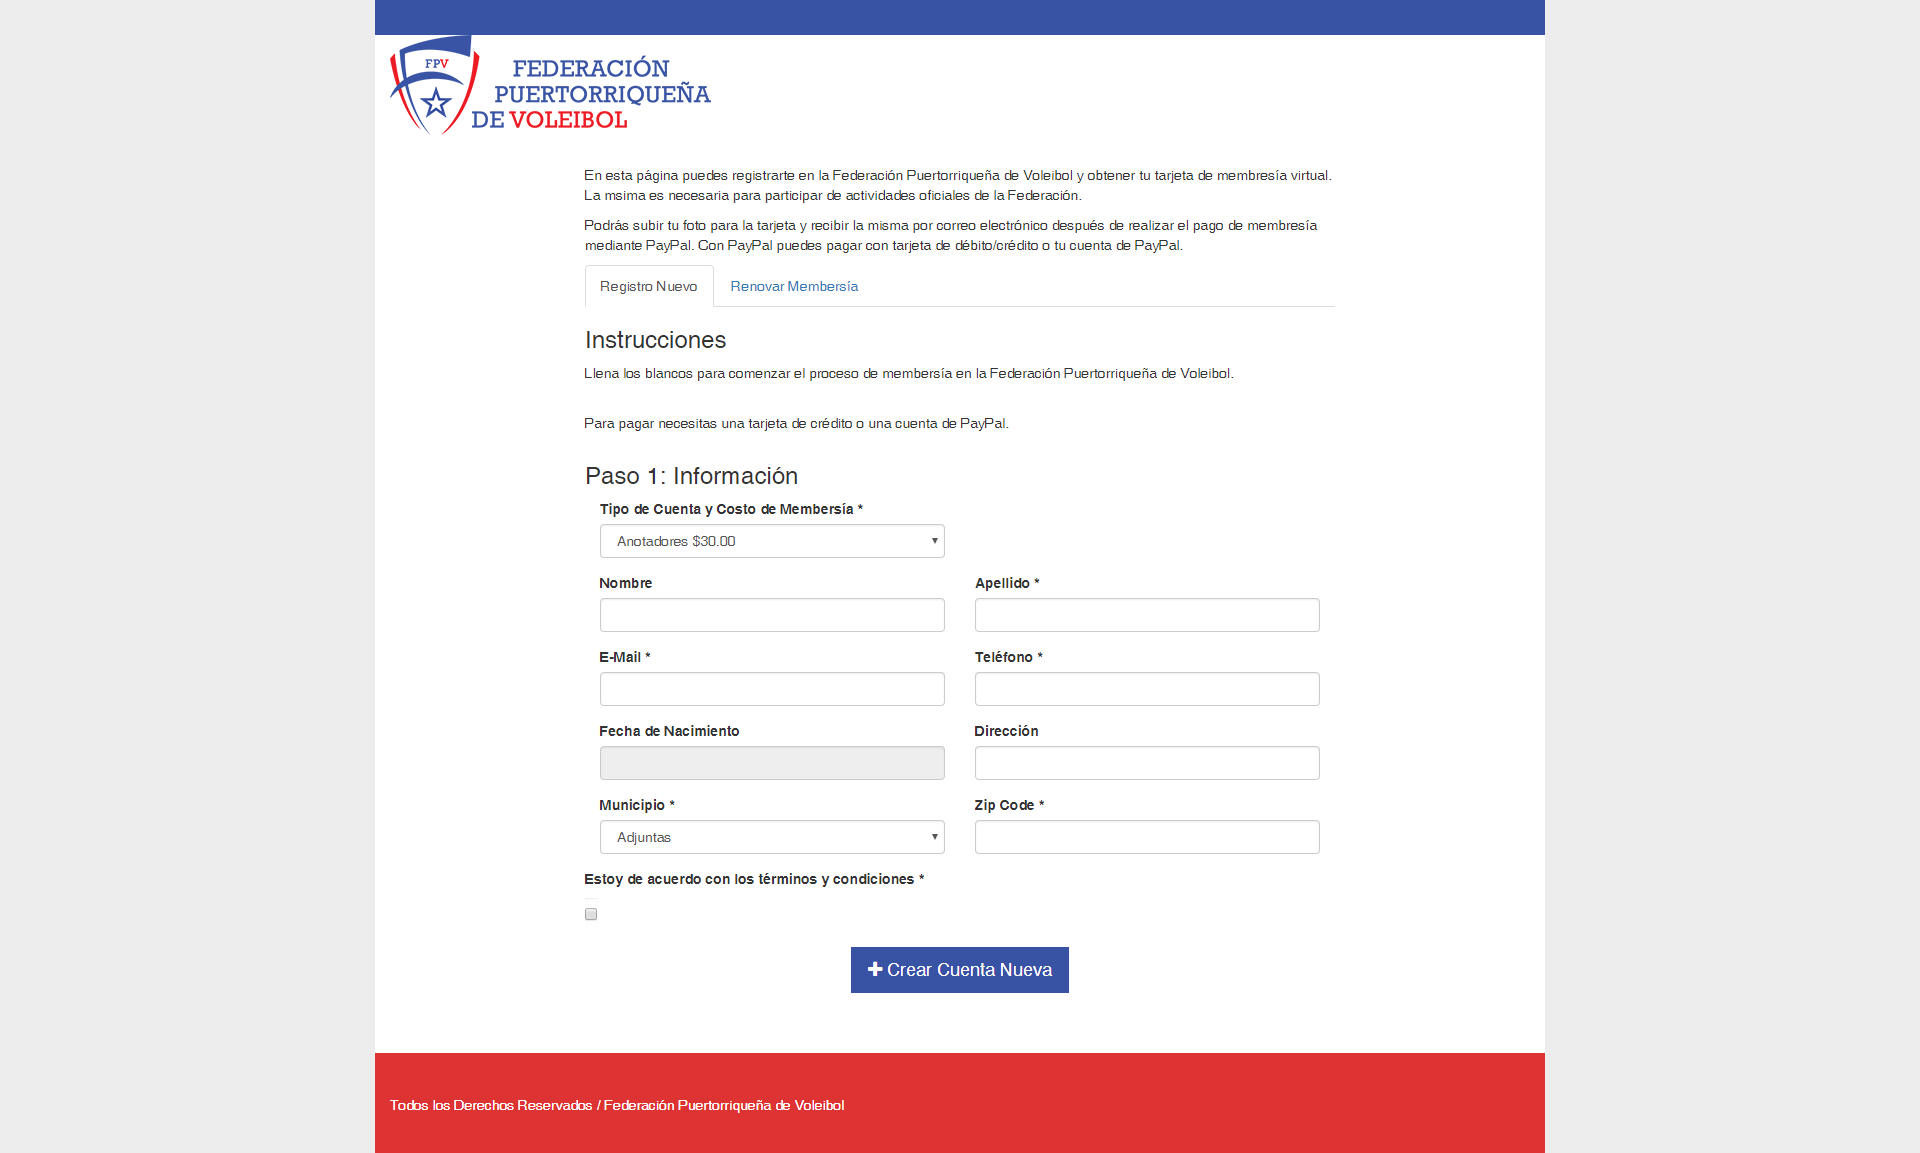 Federación Puertorriqueña de Voleibol Member Register